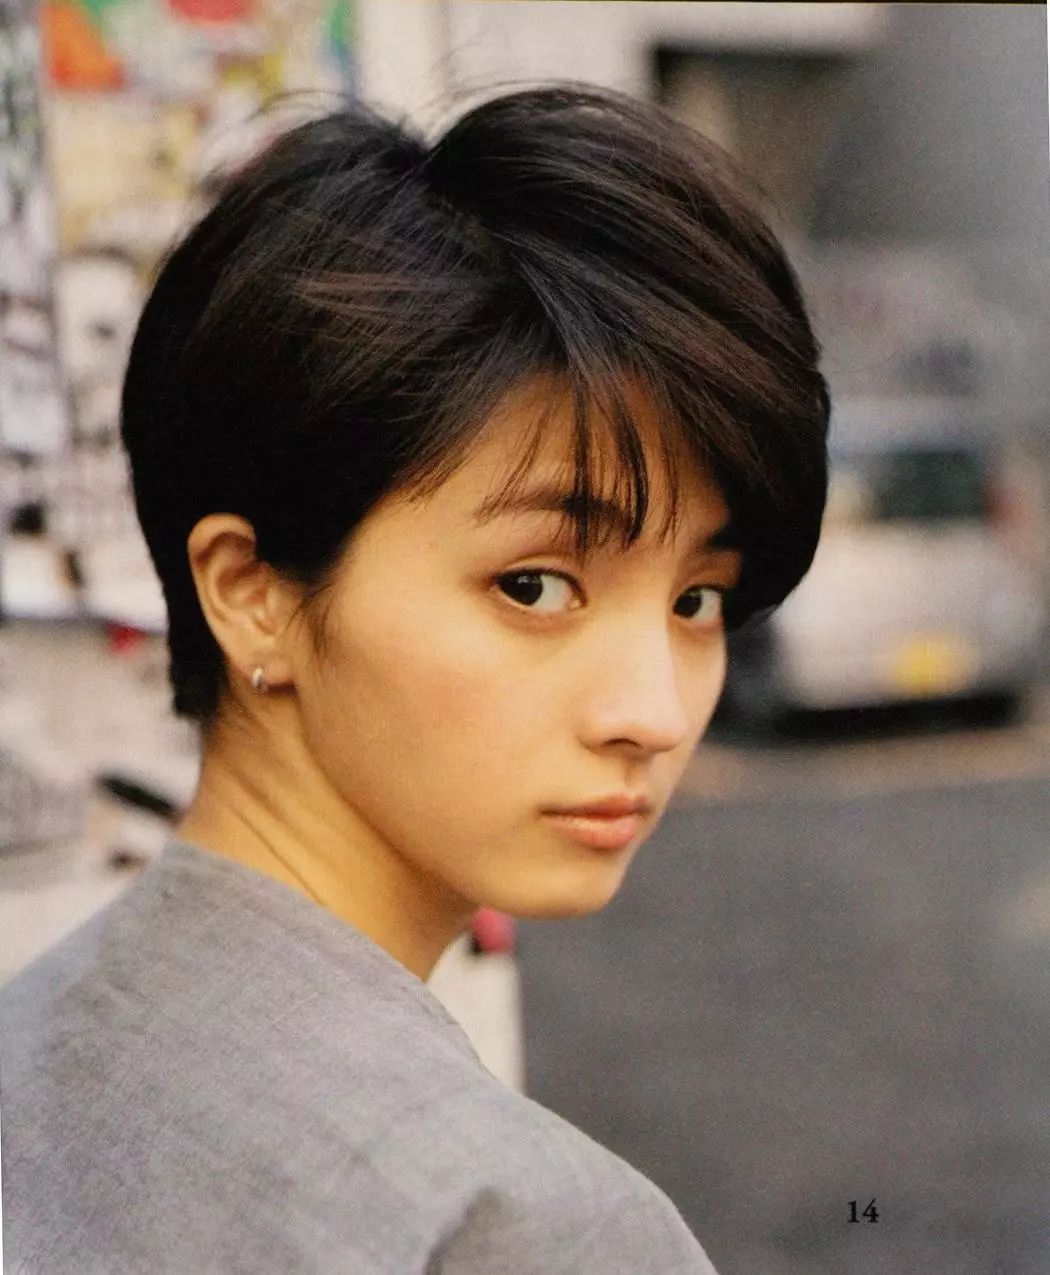 满岛光:日本最好看的短发女孩可能就是她了!